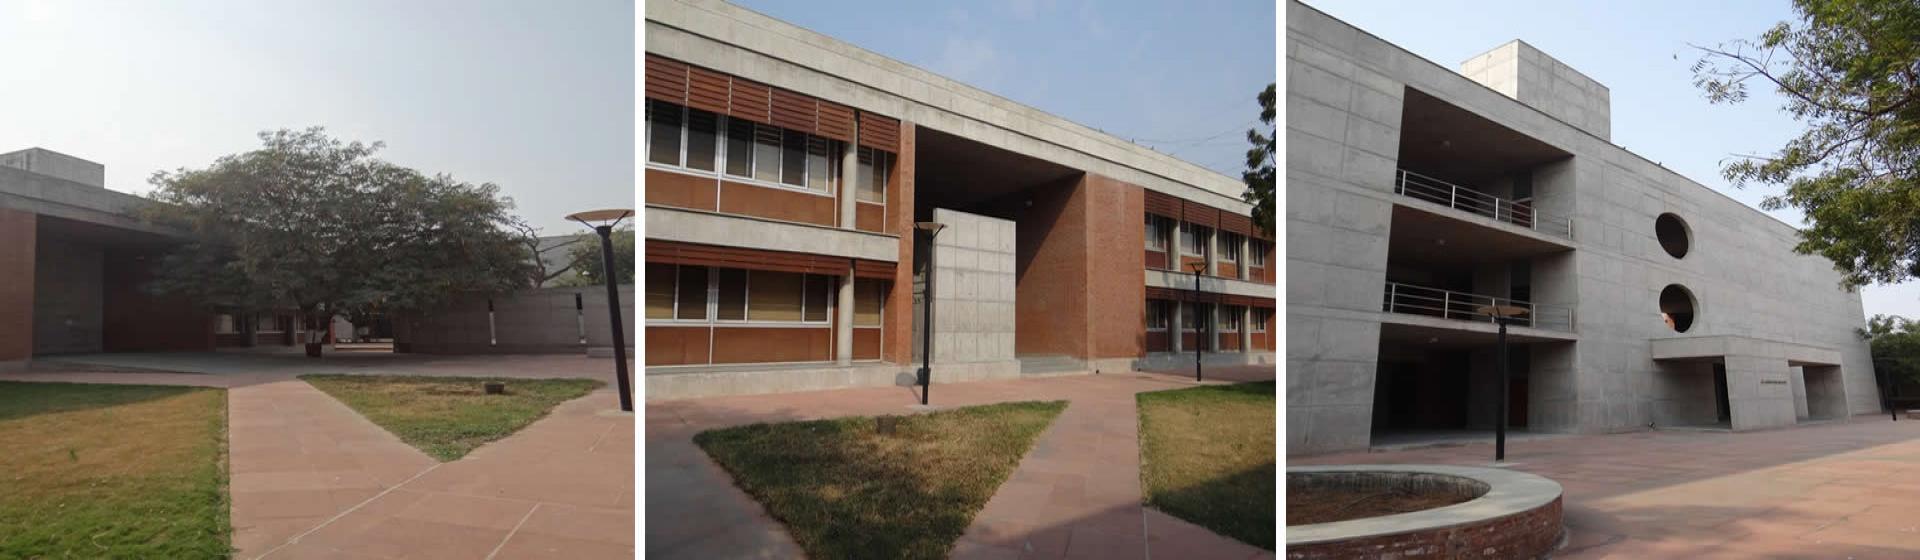 Knowledge Consortium of Gujarat - College Campus Image -2